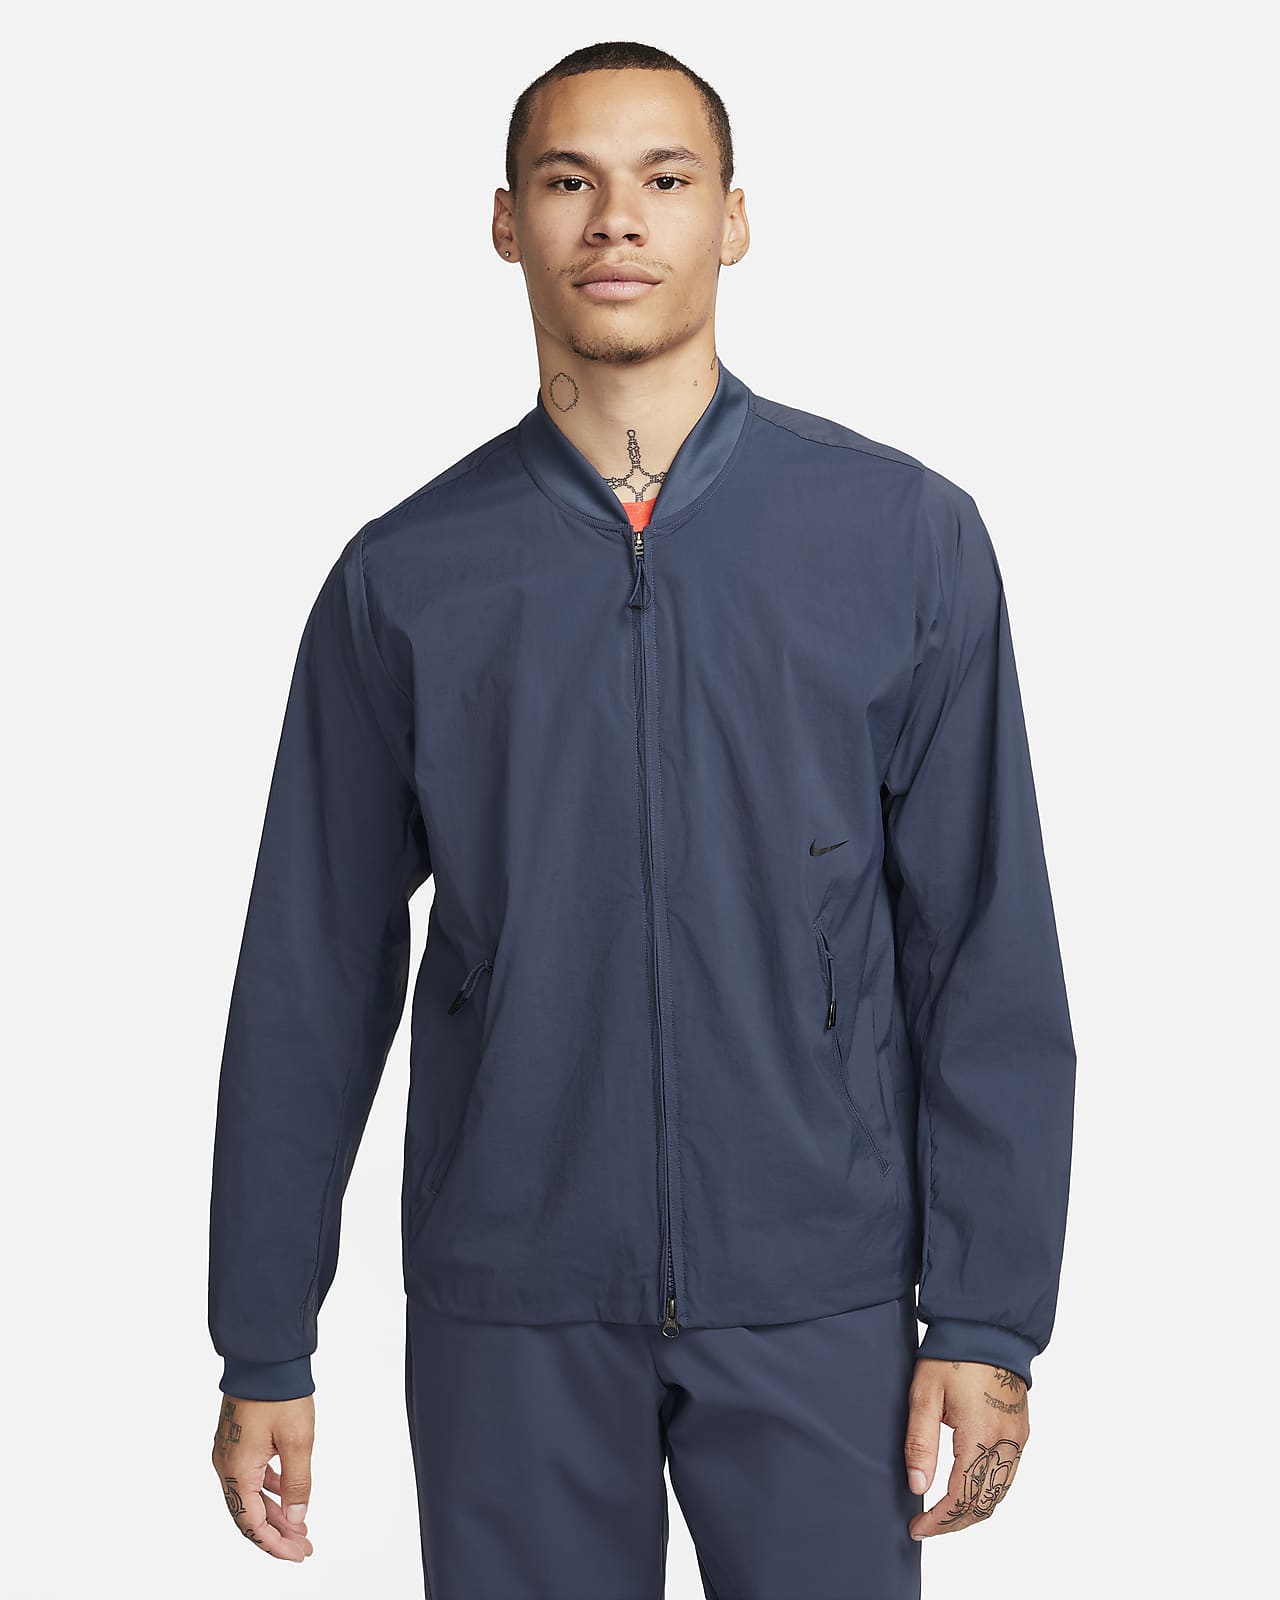 Nike Sportswear Tech Fleece Men's Bomber Jacket. Nike CA